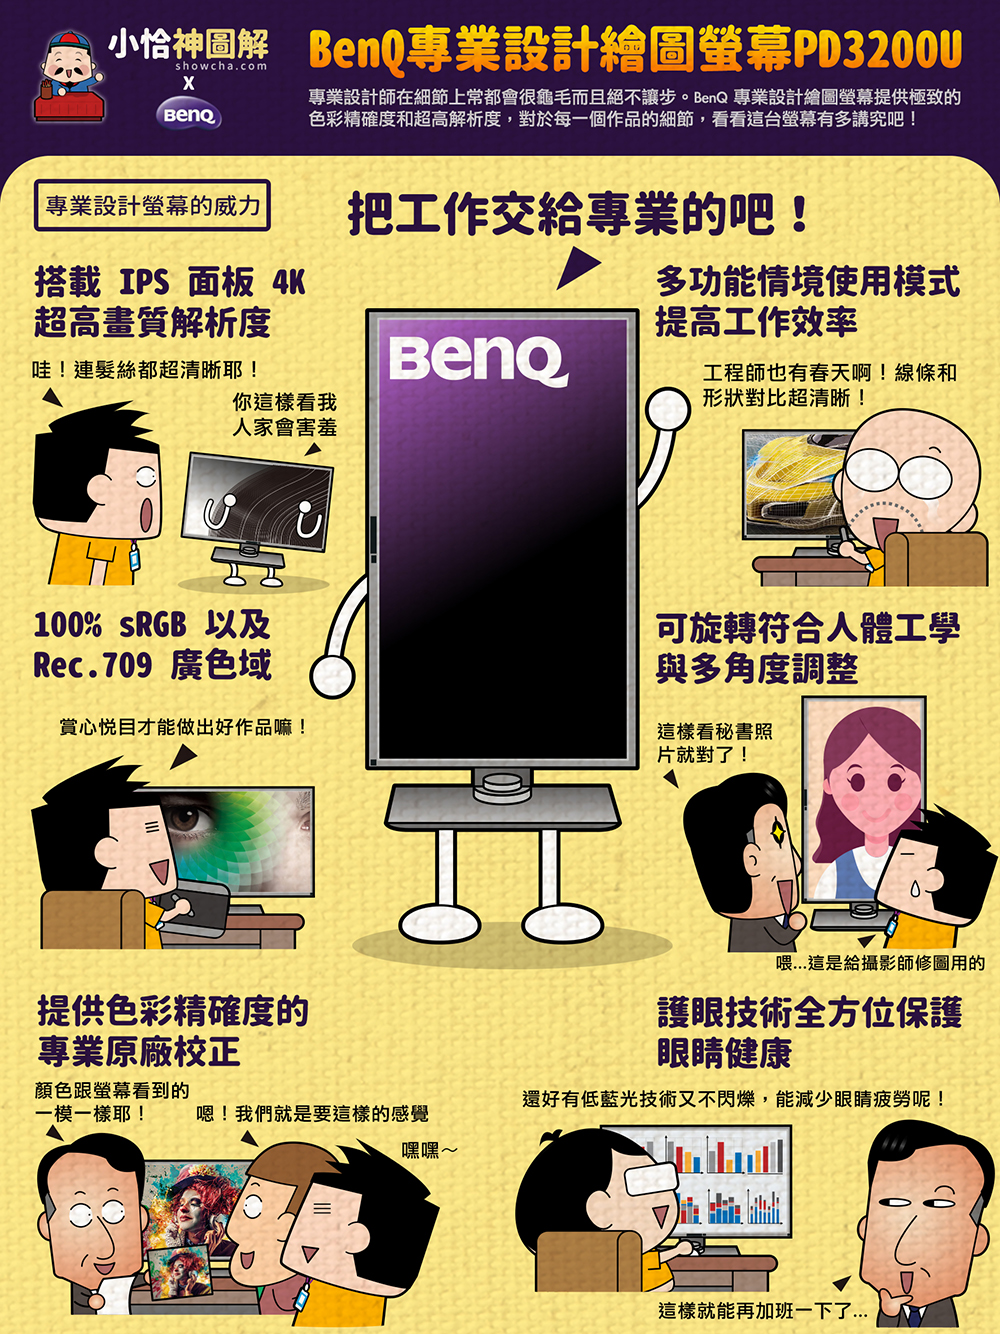 BenQ 螢幕 PD3200U 設計 繪圖